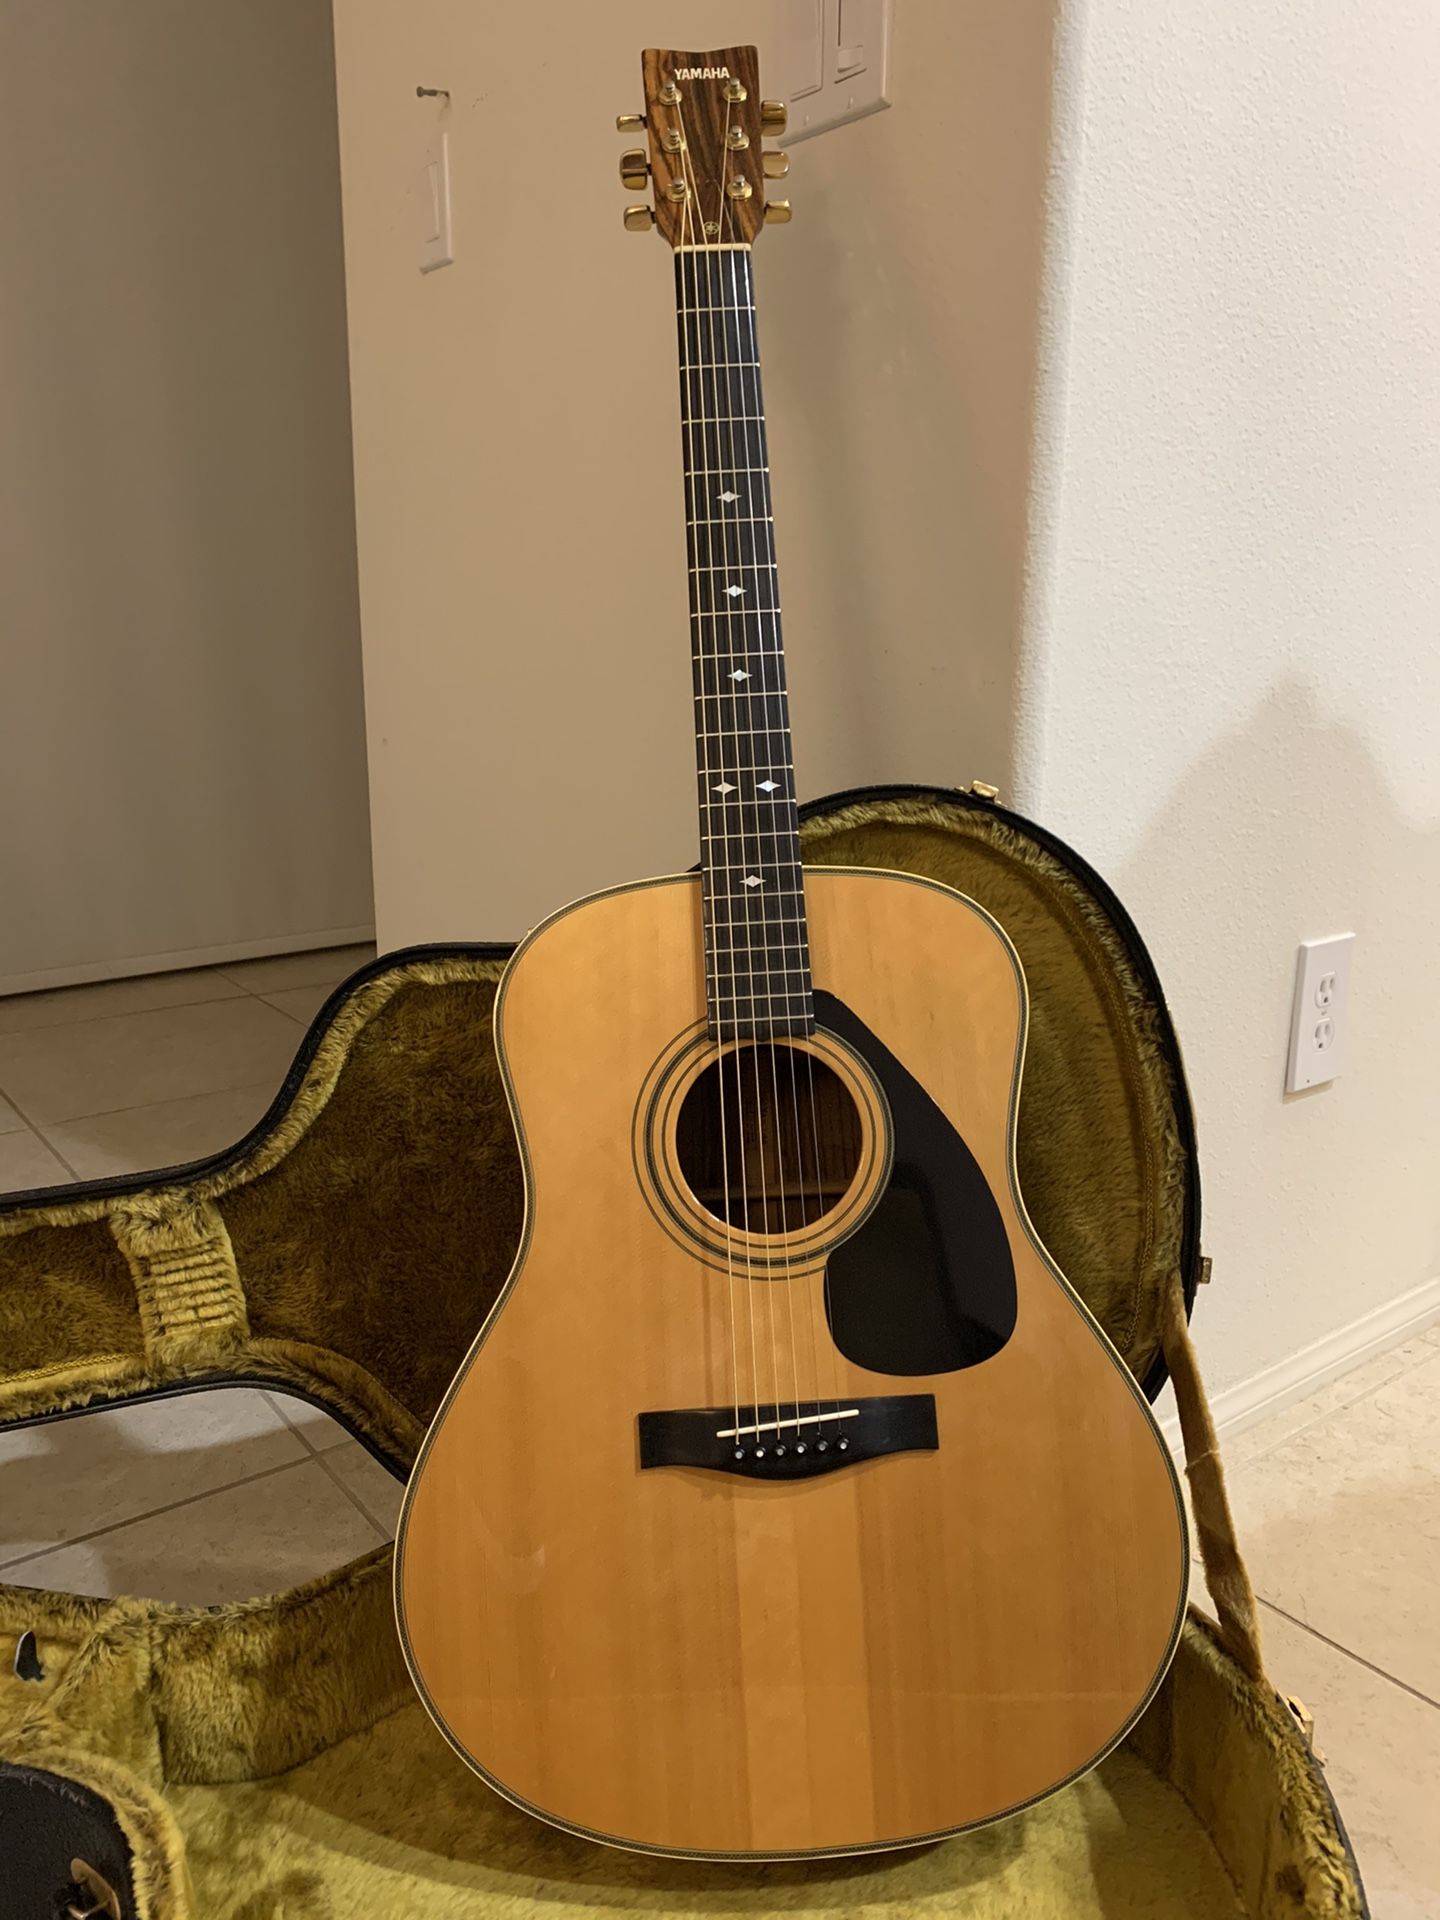 1981 Yamaha L-15A Acoustic Guitar w/ Original Case